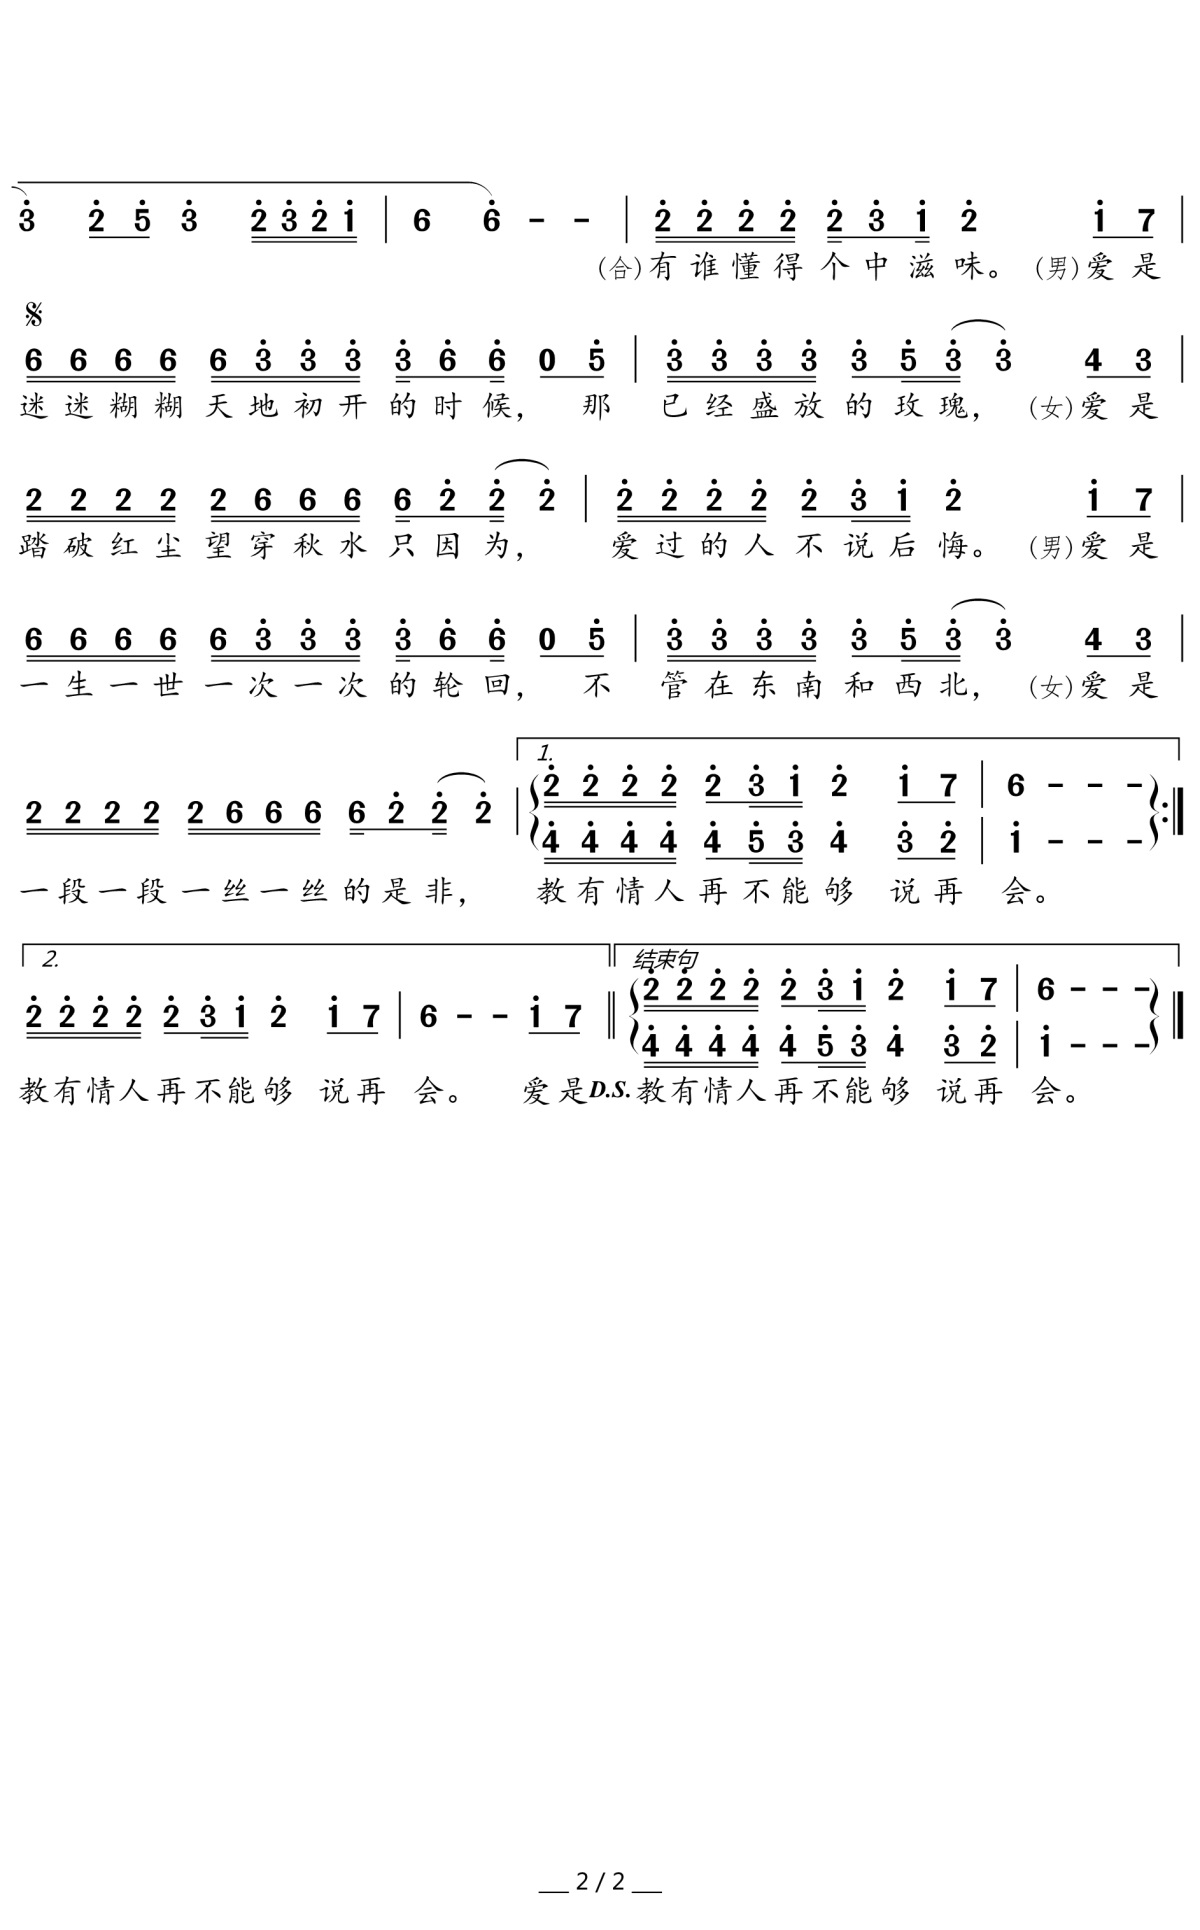 【天下有情人】的简谱乐谱及歌词 – 周华健 (Emil Wakin Chau)/齐豫